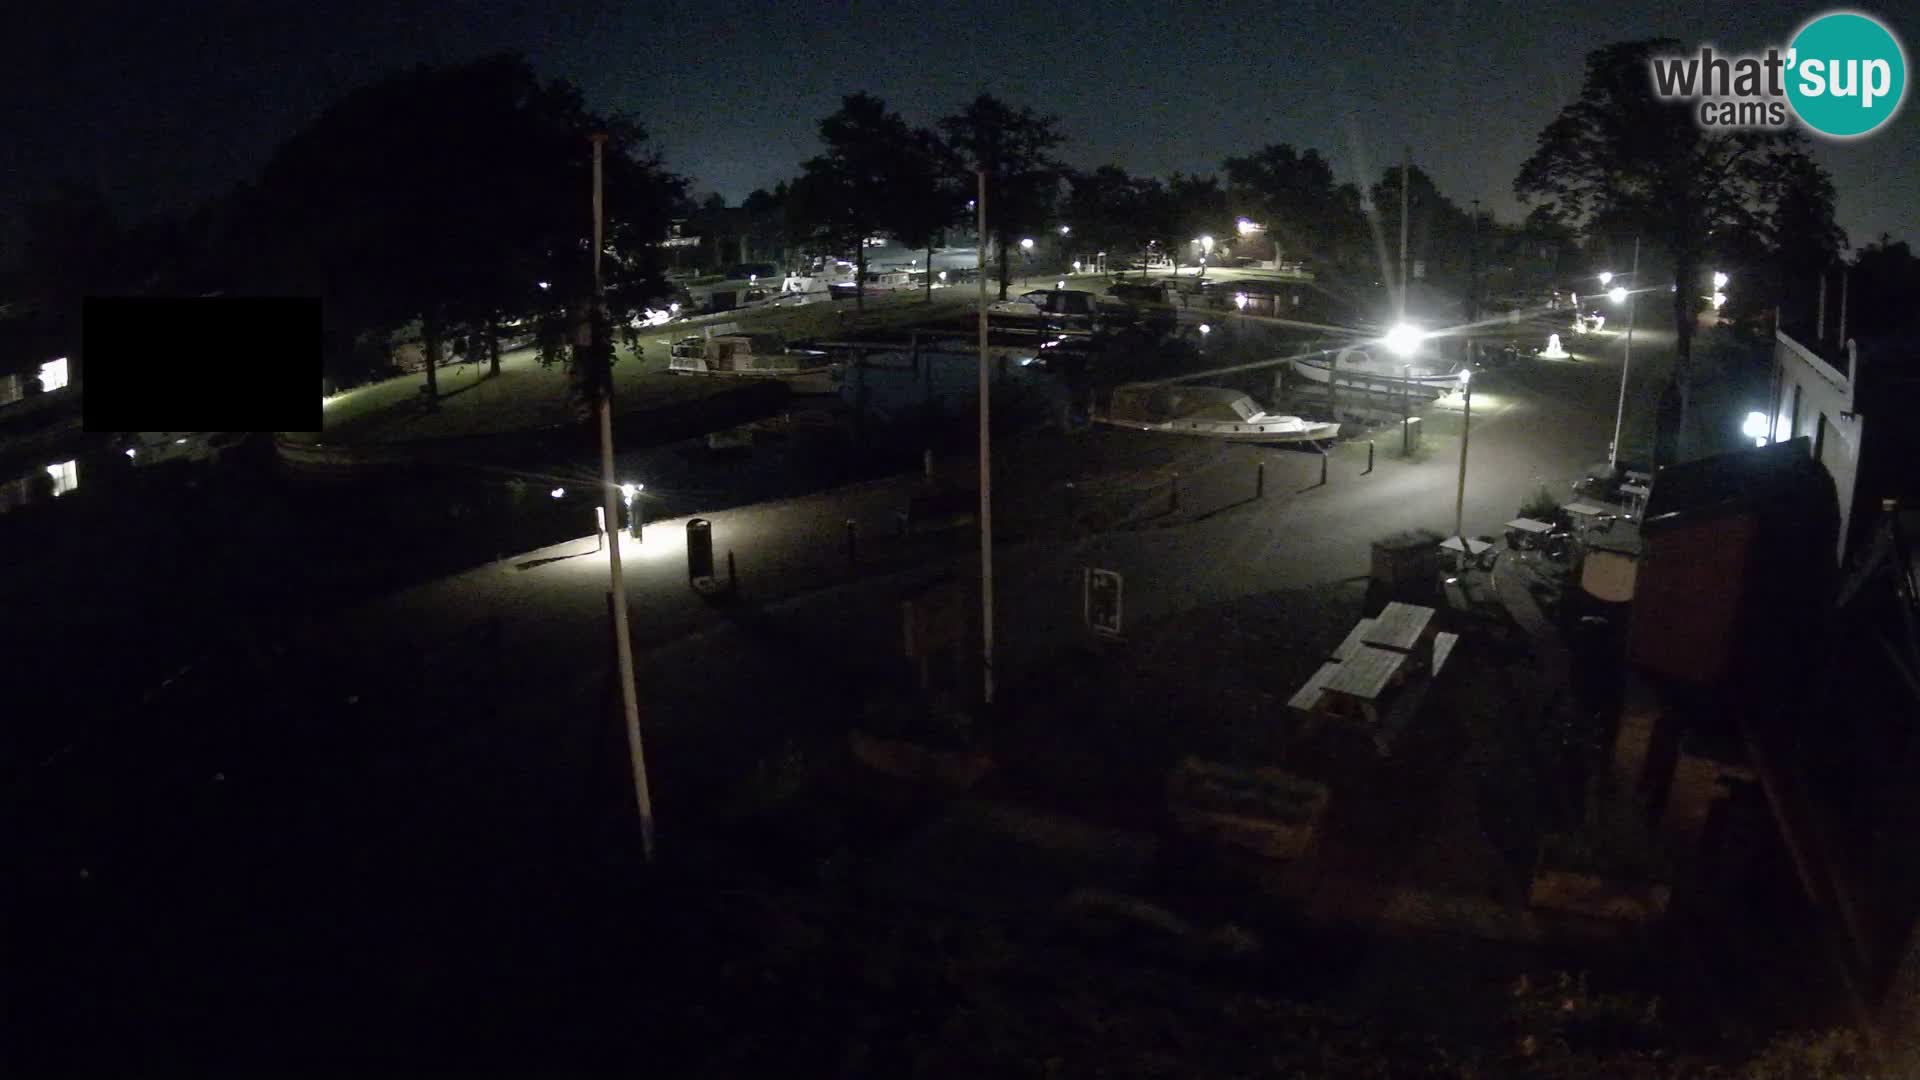 Le port de Joure livecam